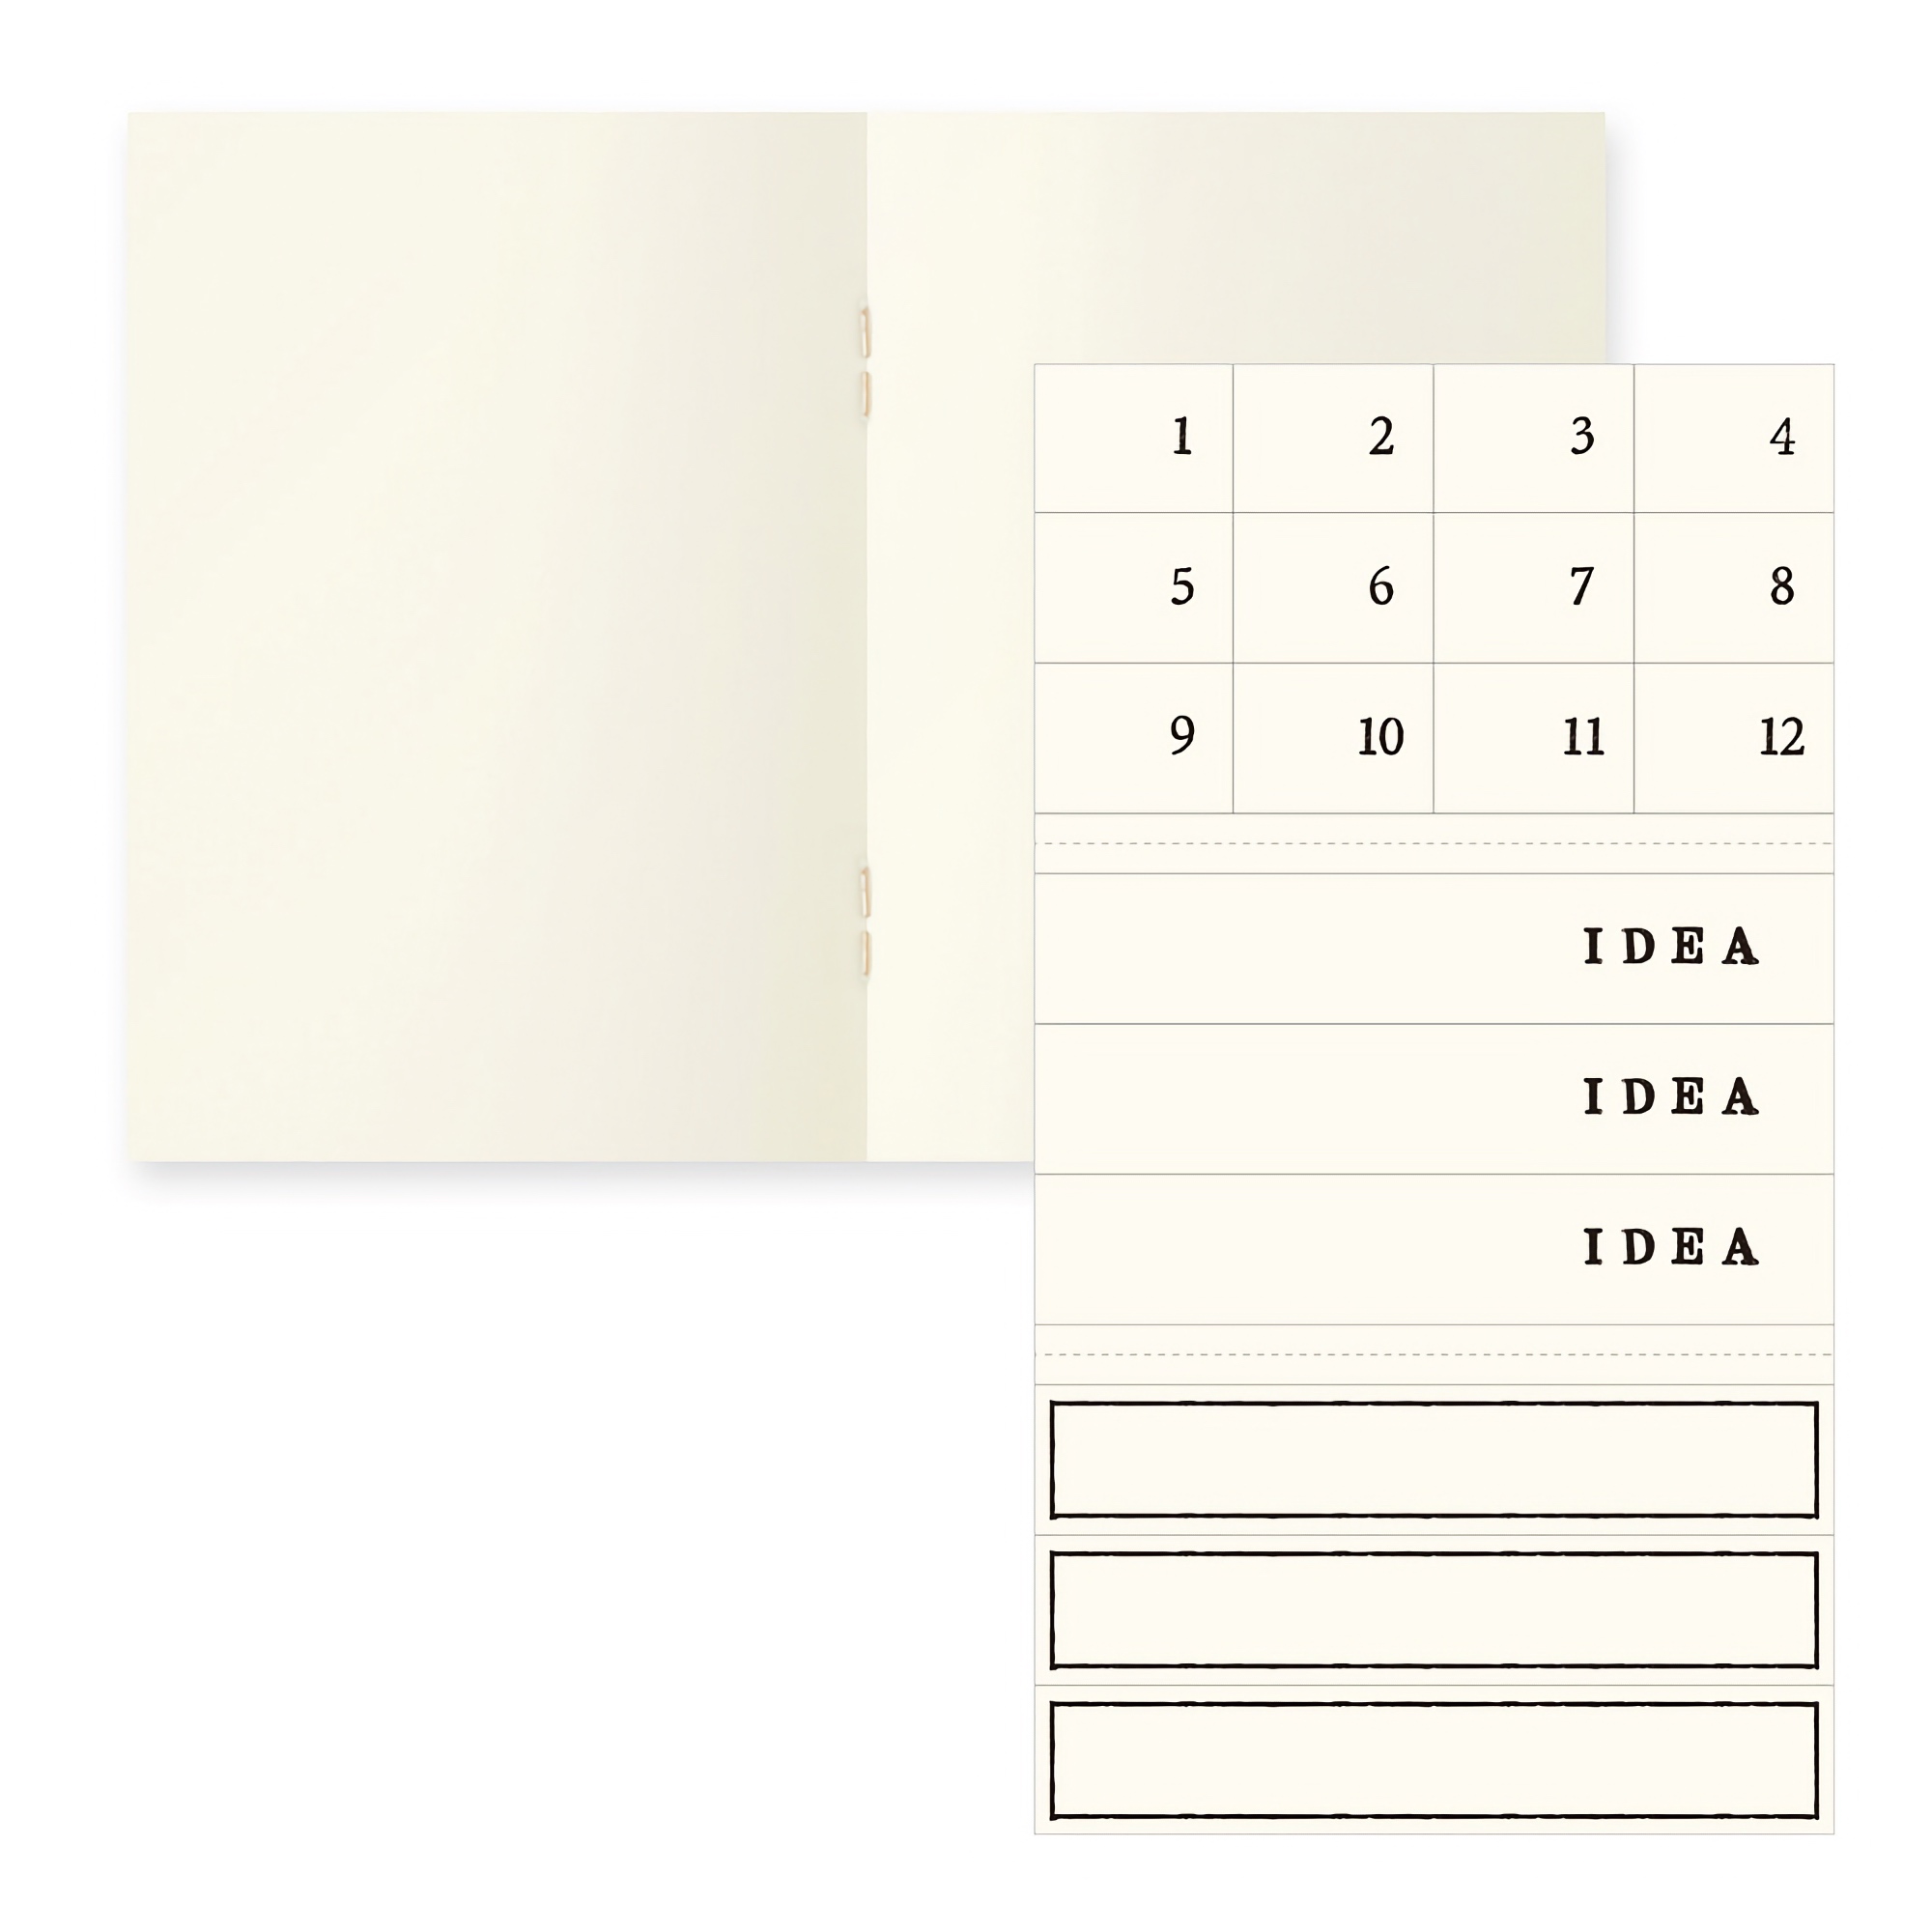 Midori MD Notebook Light [A7] Blank 3-pack